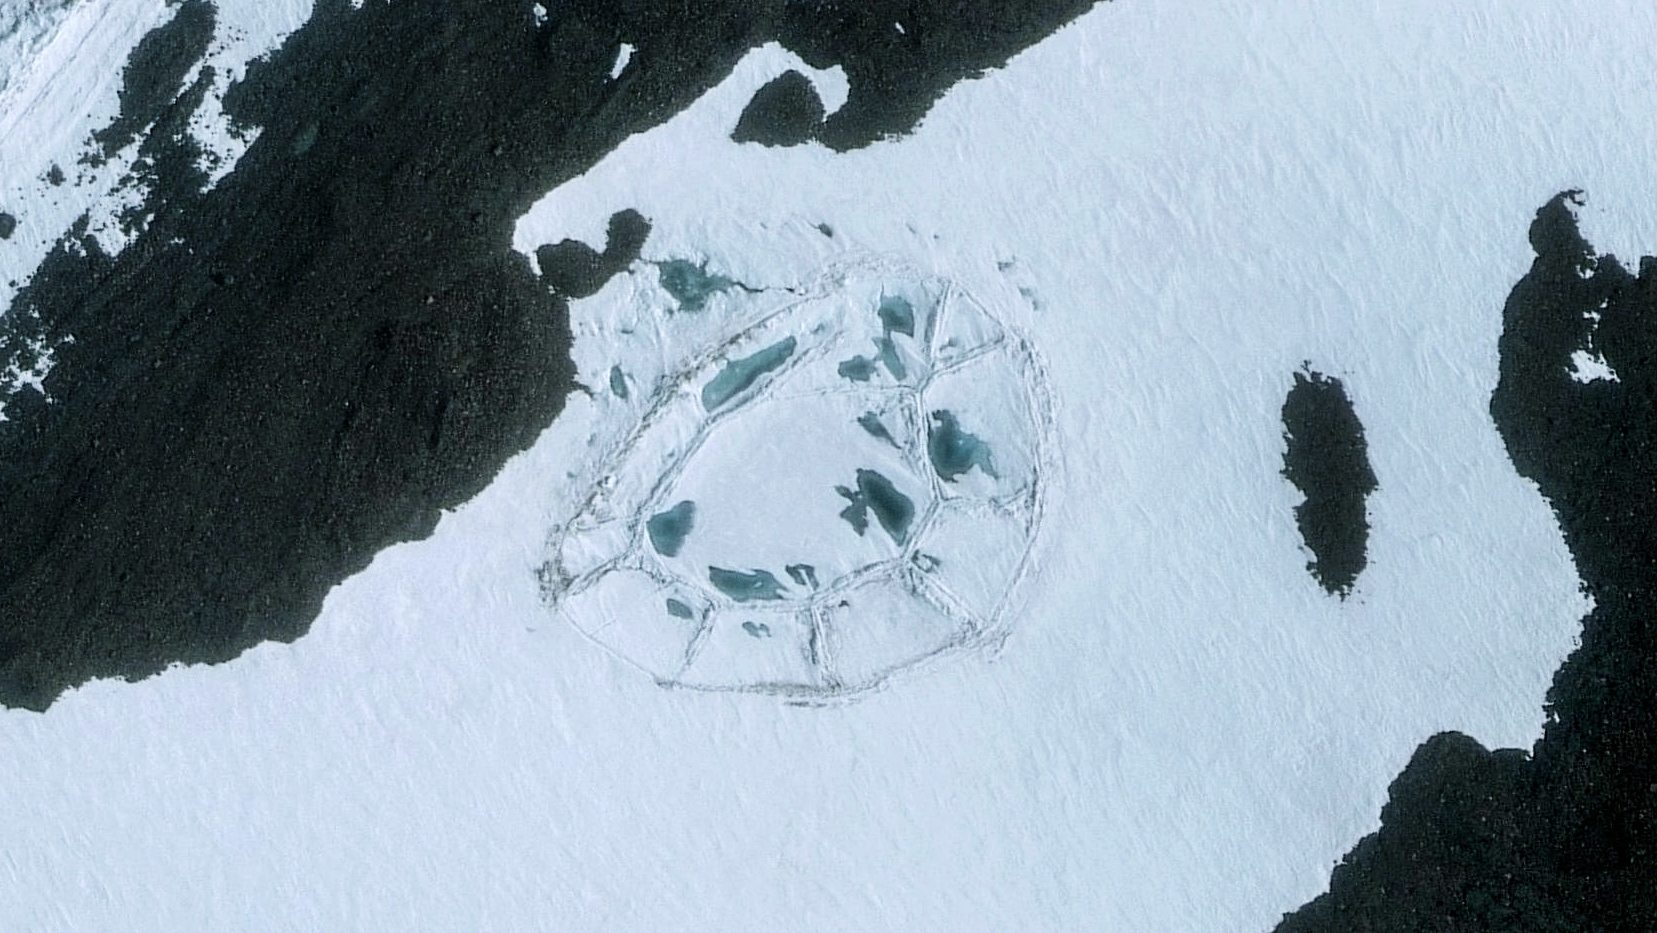 یک سازه بیضی شکل بزرگ در قطب جنوب پیدا شد: تاریخ باید بازنویسی شود! 3